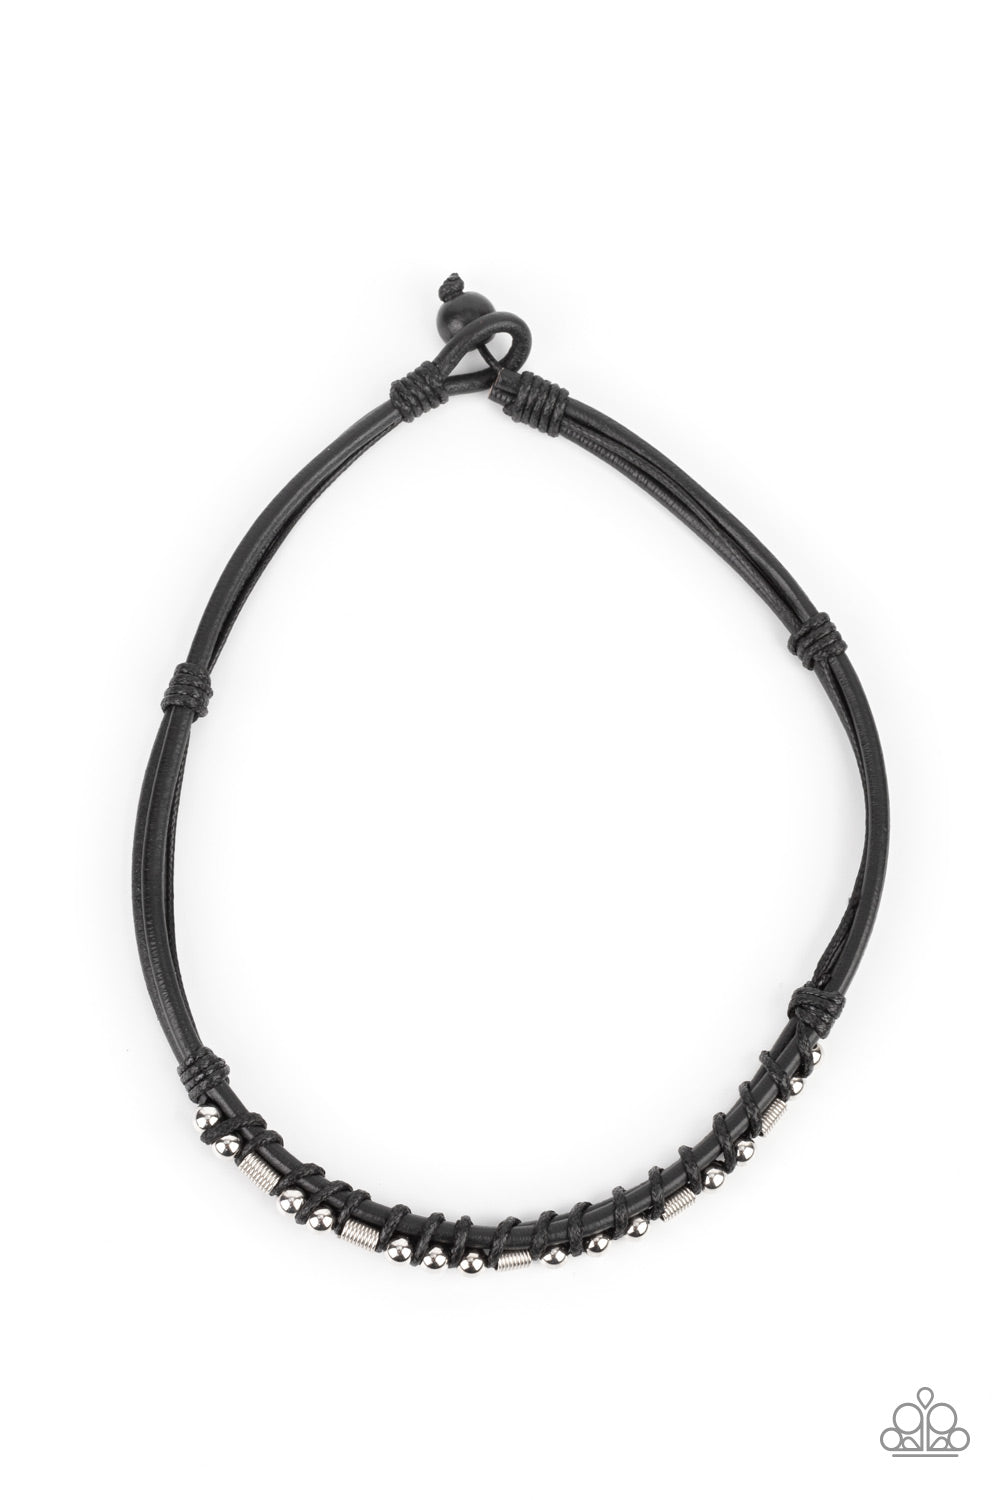 PAPARAZZI | Westside Wrangler - Black | Leather corded Necklace | Urban